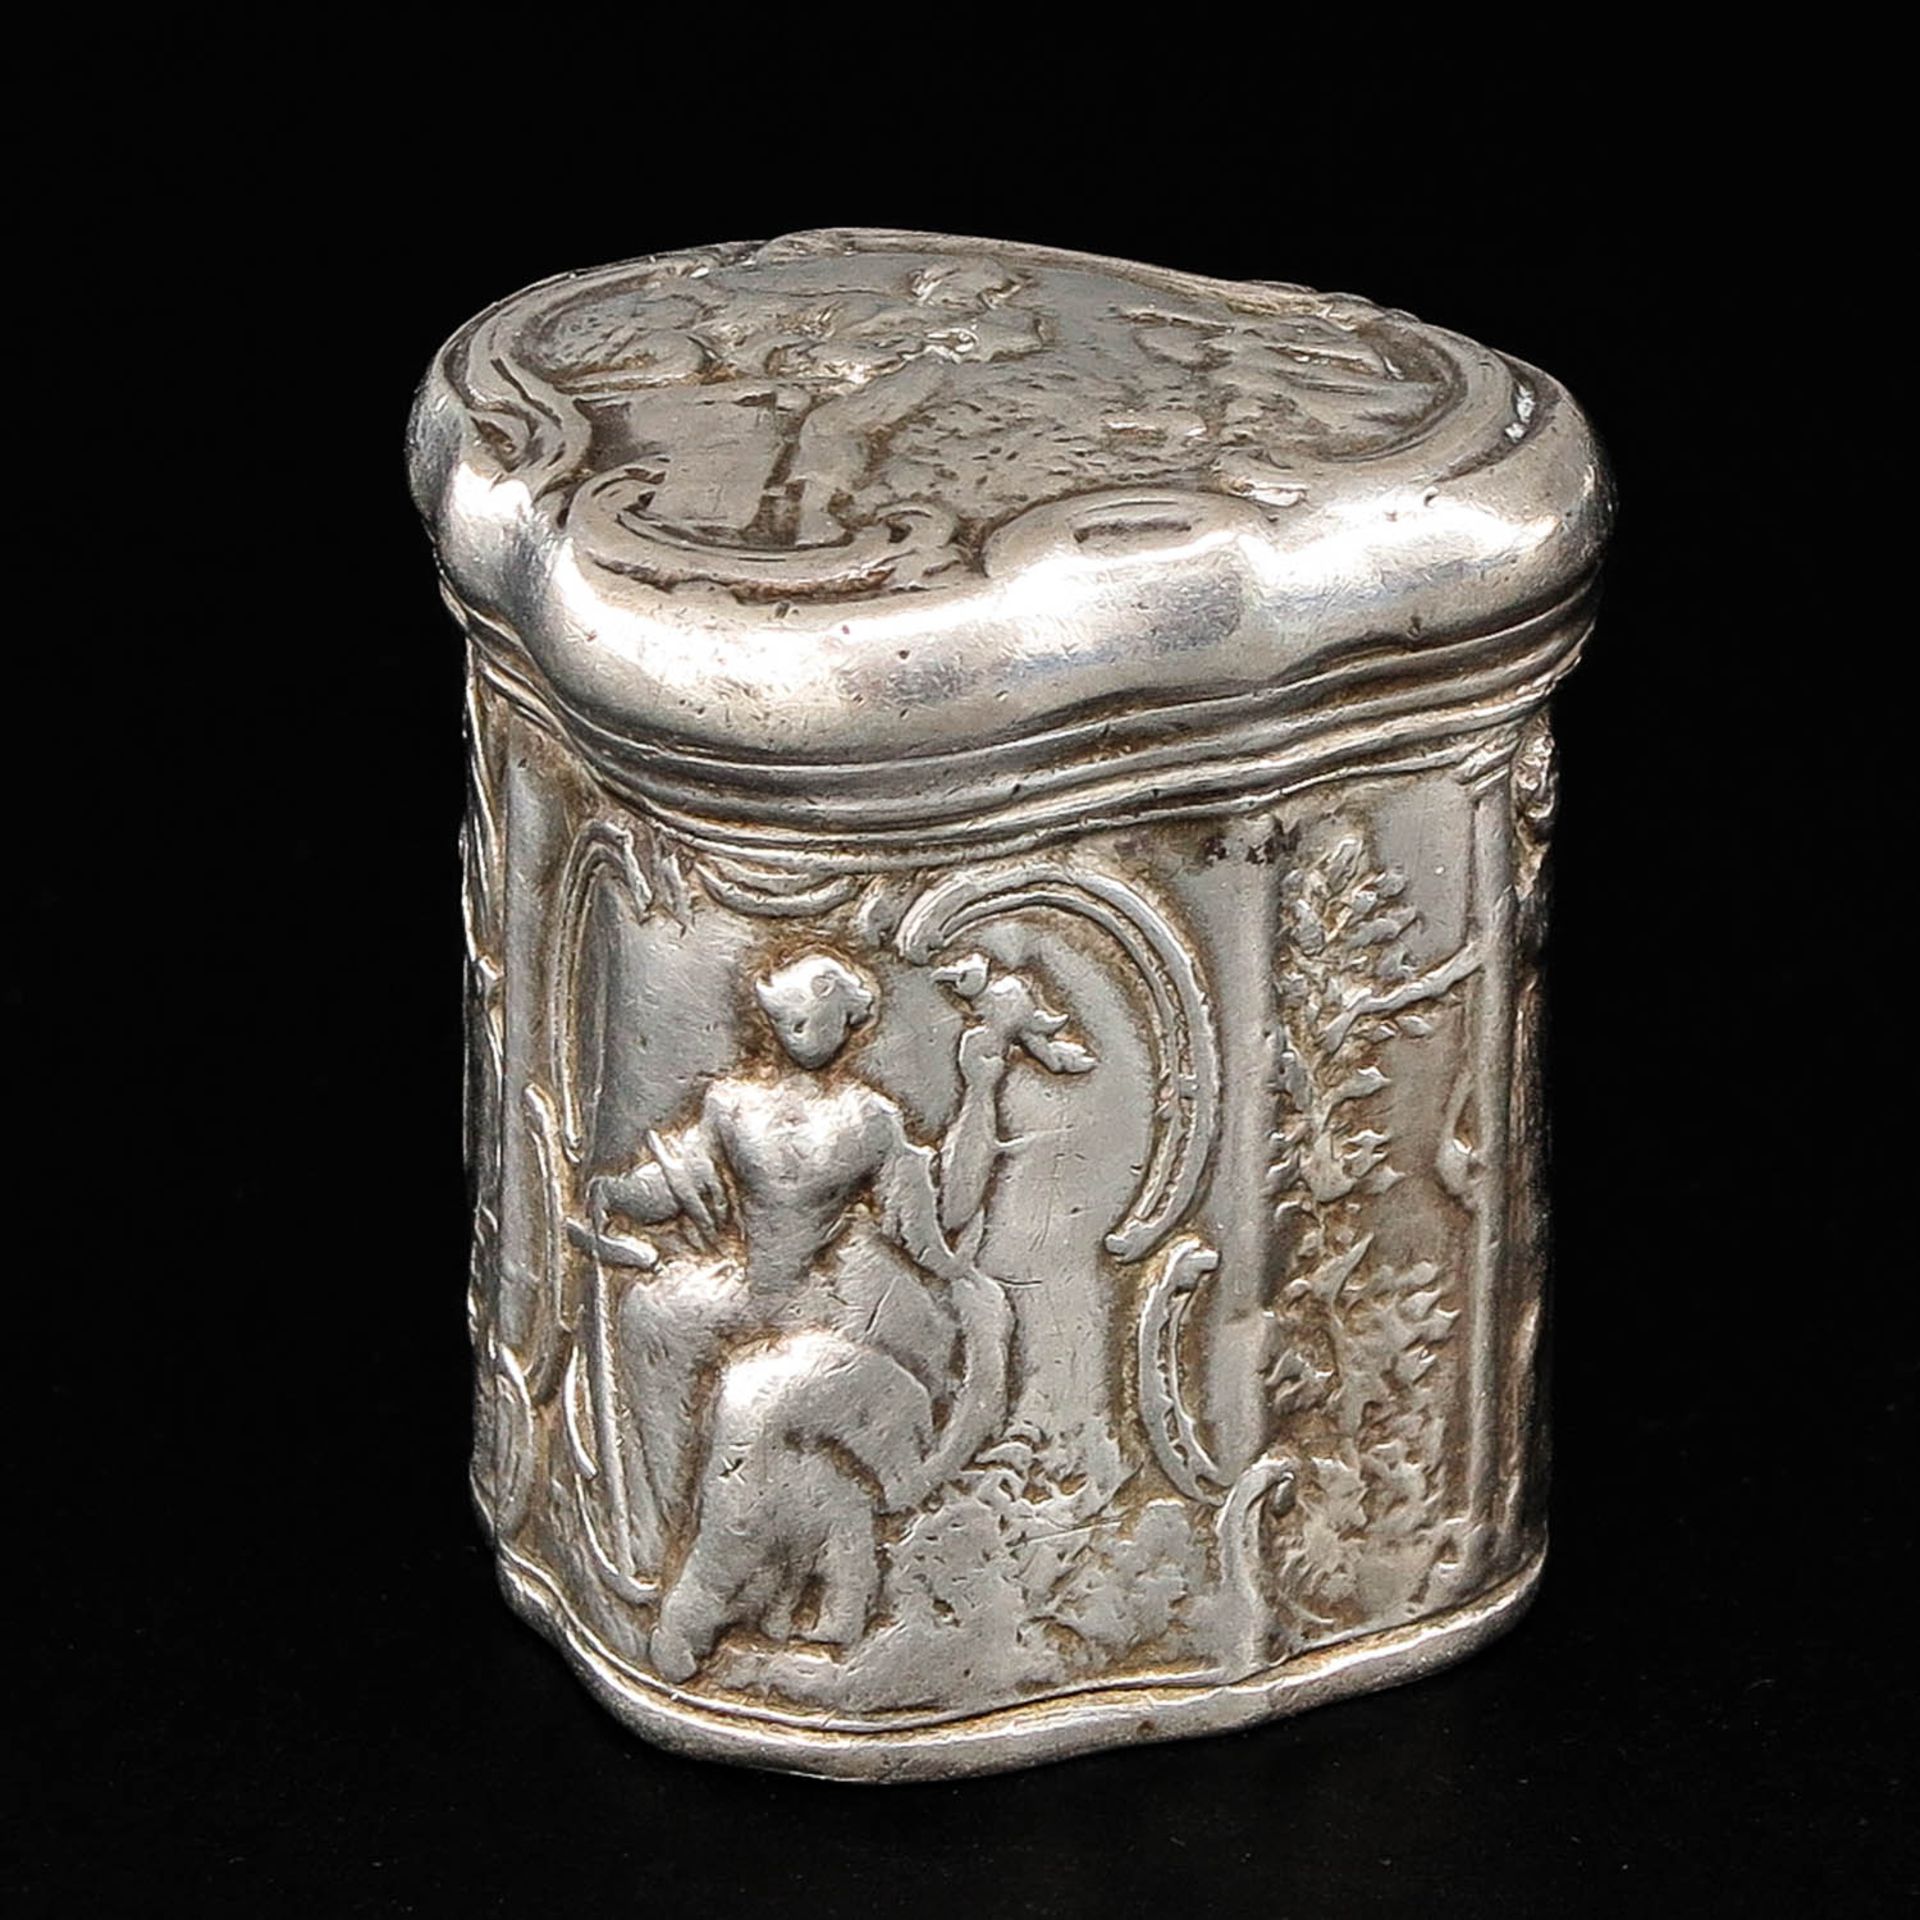 A Silver Scent Box or Lodereindoosje